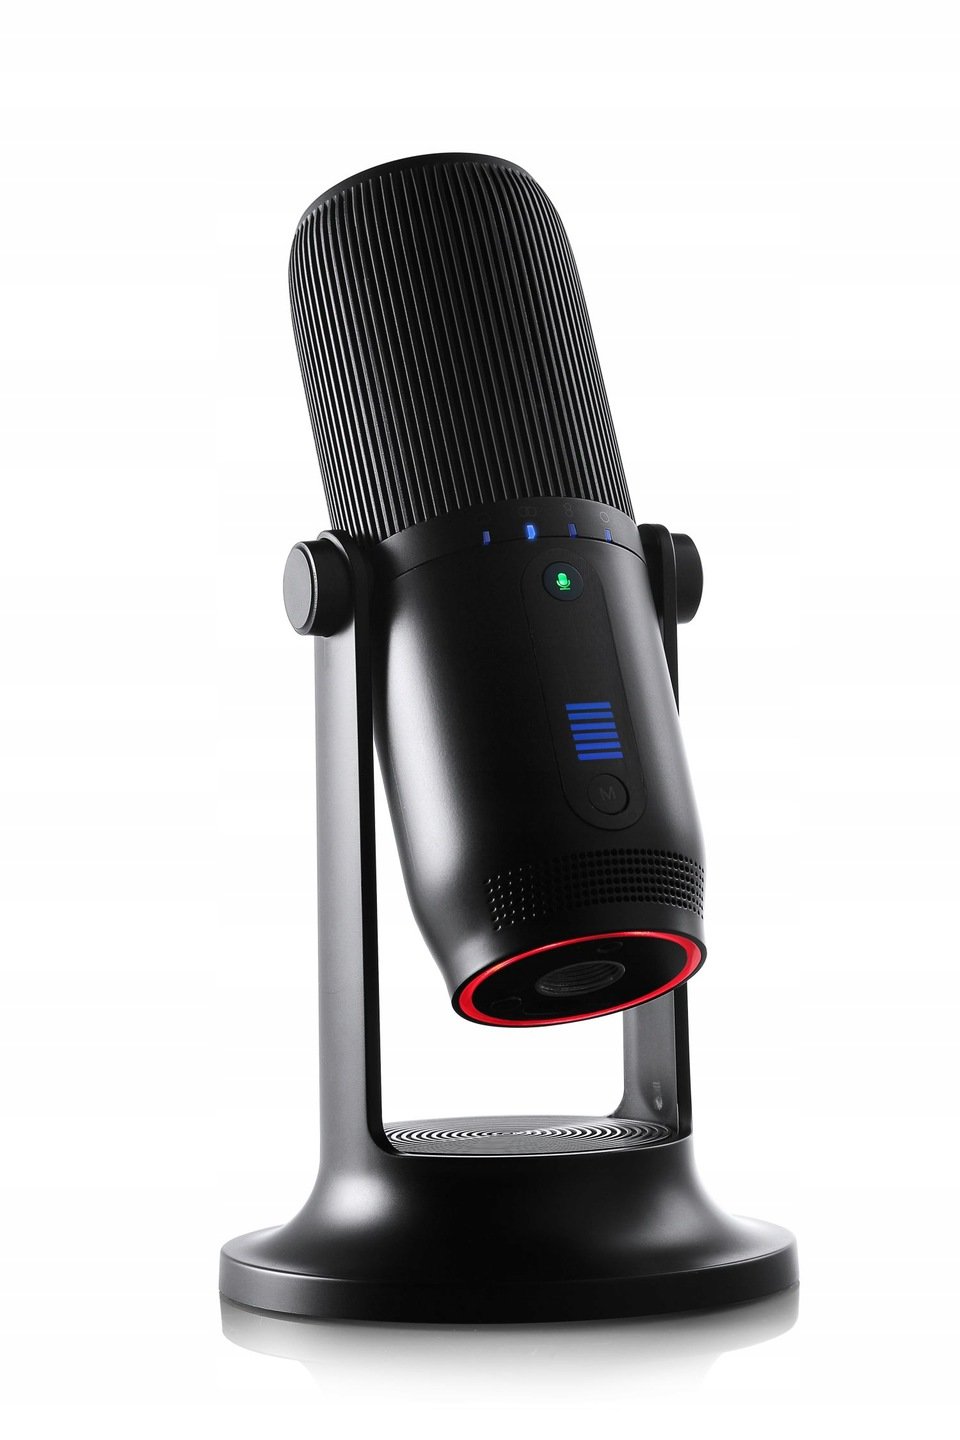 THRONMAX Mdrill One M2 Mikrofon - niskie ceny i opinie w Media Expert